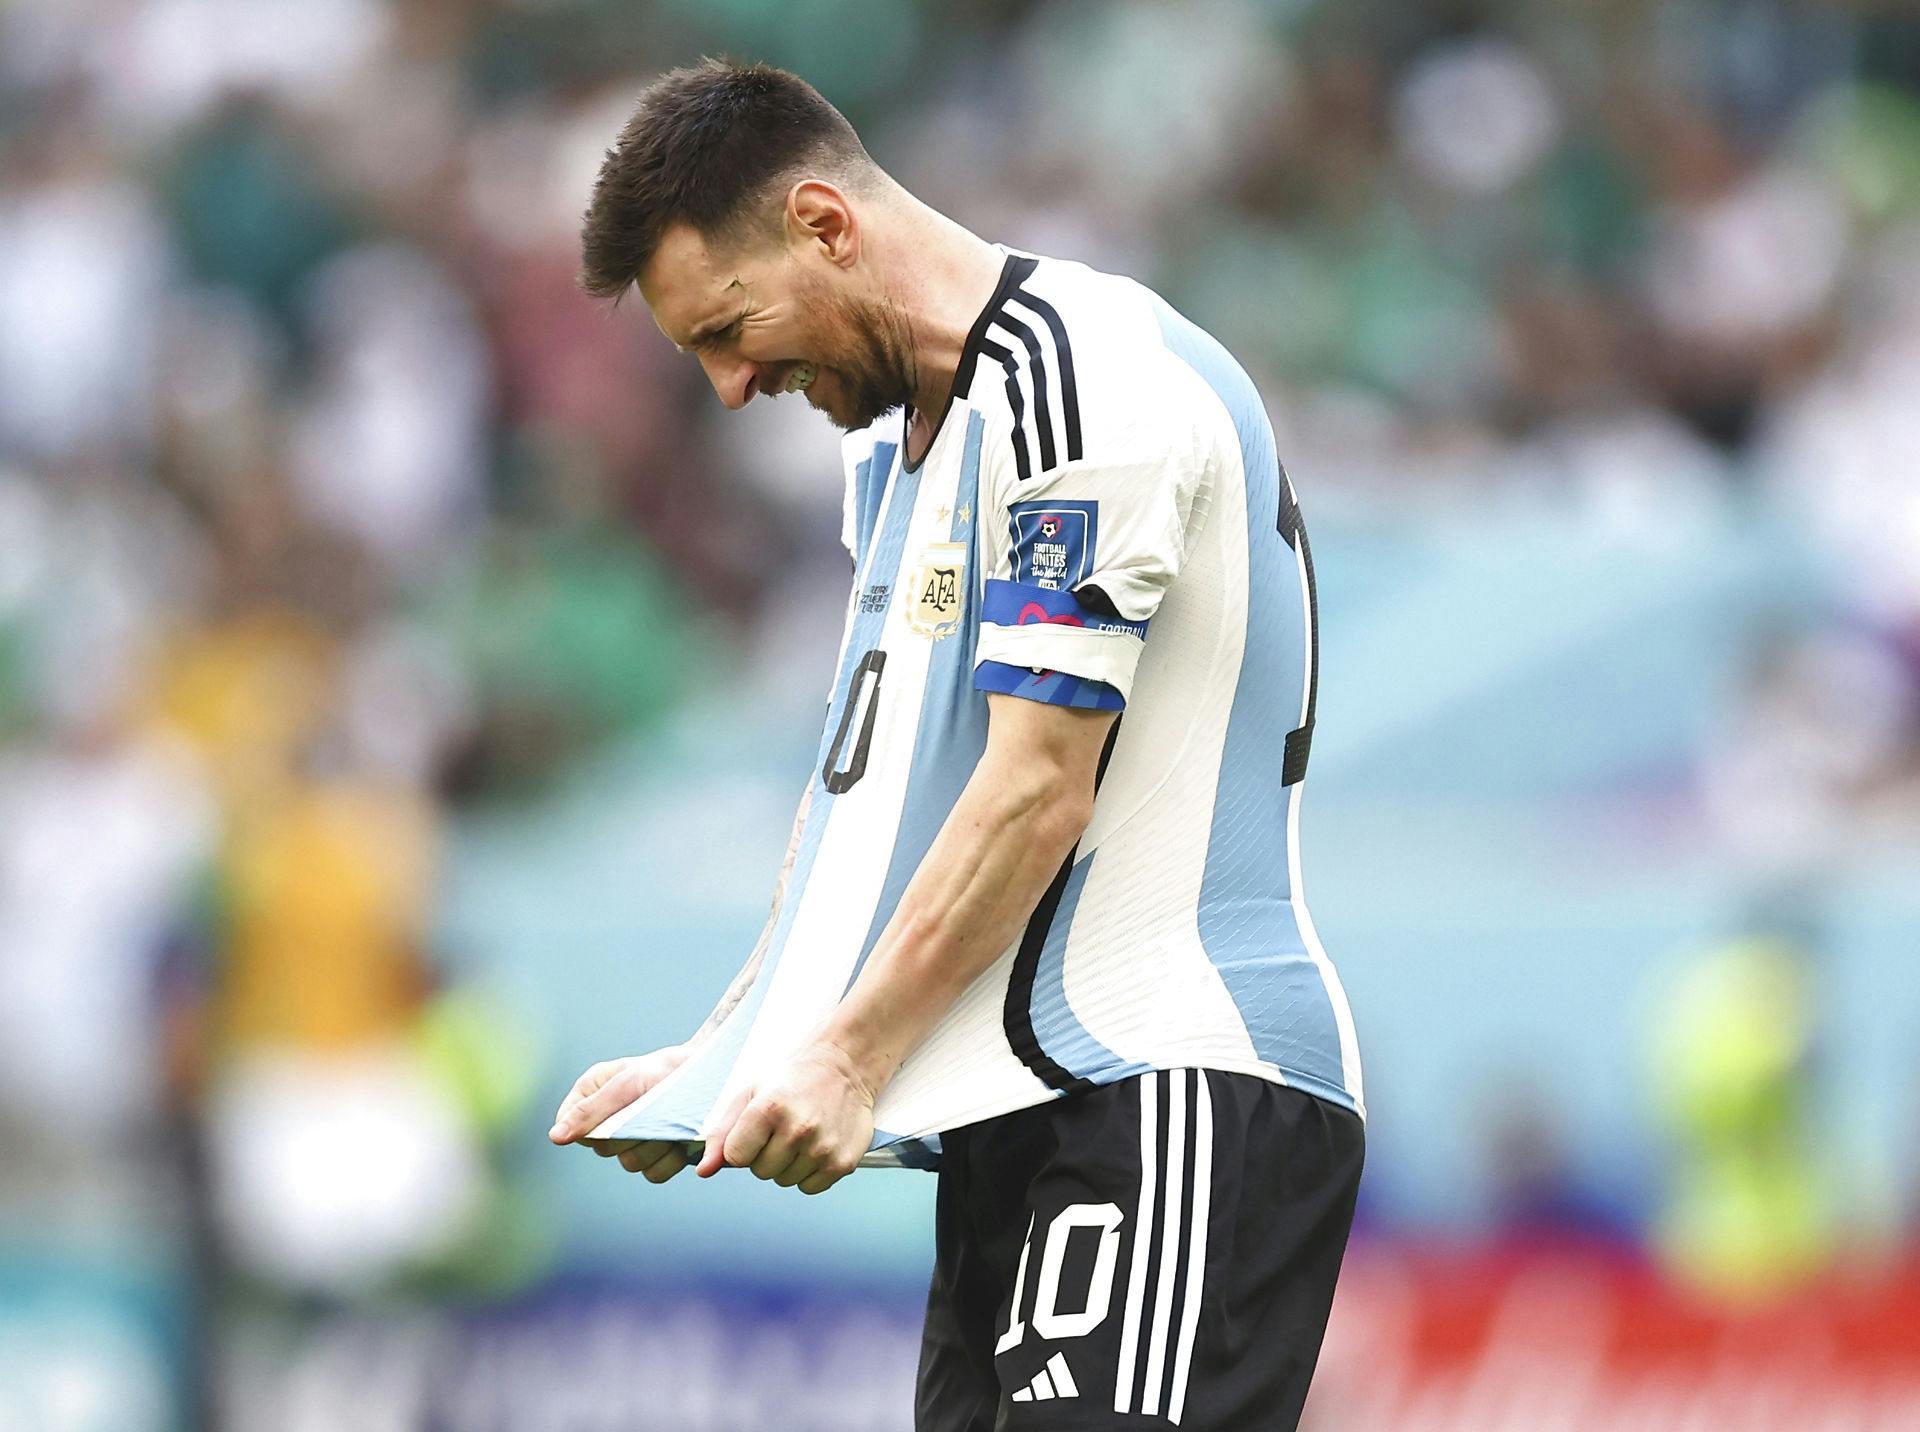 Messi scorede, men måtte indkasse et sensationelt nederlag mod Saudi-Arabien ved VM.